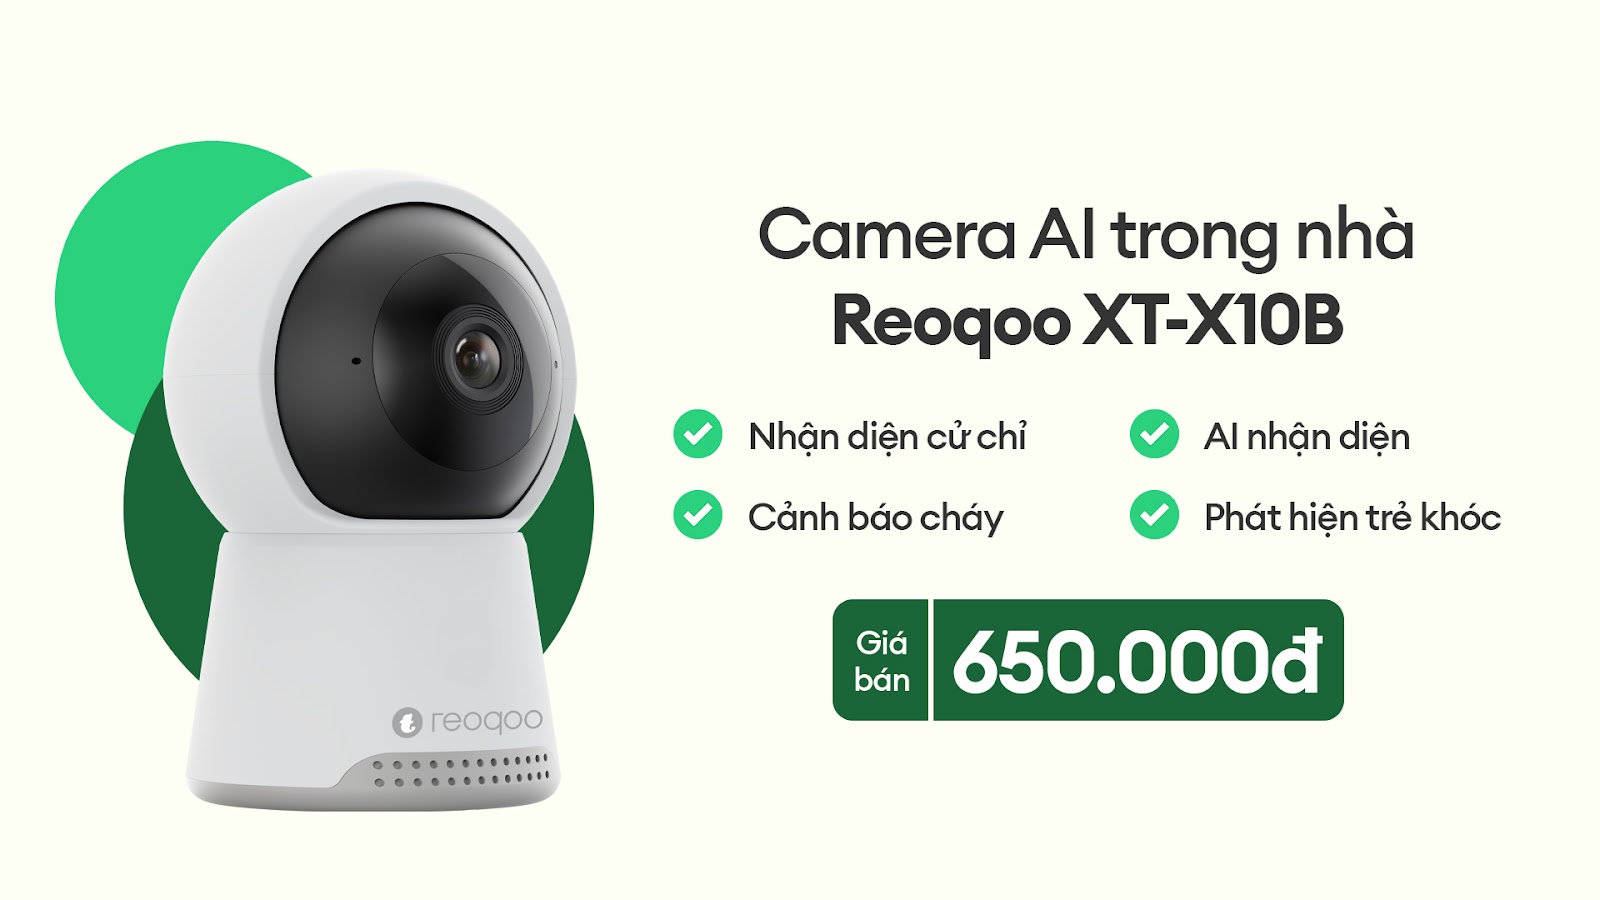 Reoqoo ra mắt camera AI, an toàn và quản lý toàn diện cho ngôi nhà - e0OCK1GuSGZvxxw598kiaje e yYr34m1MpKpfzoGGIN a99zTj55iTPLSlV2kHzkY4gm6EZz